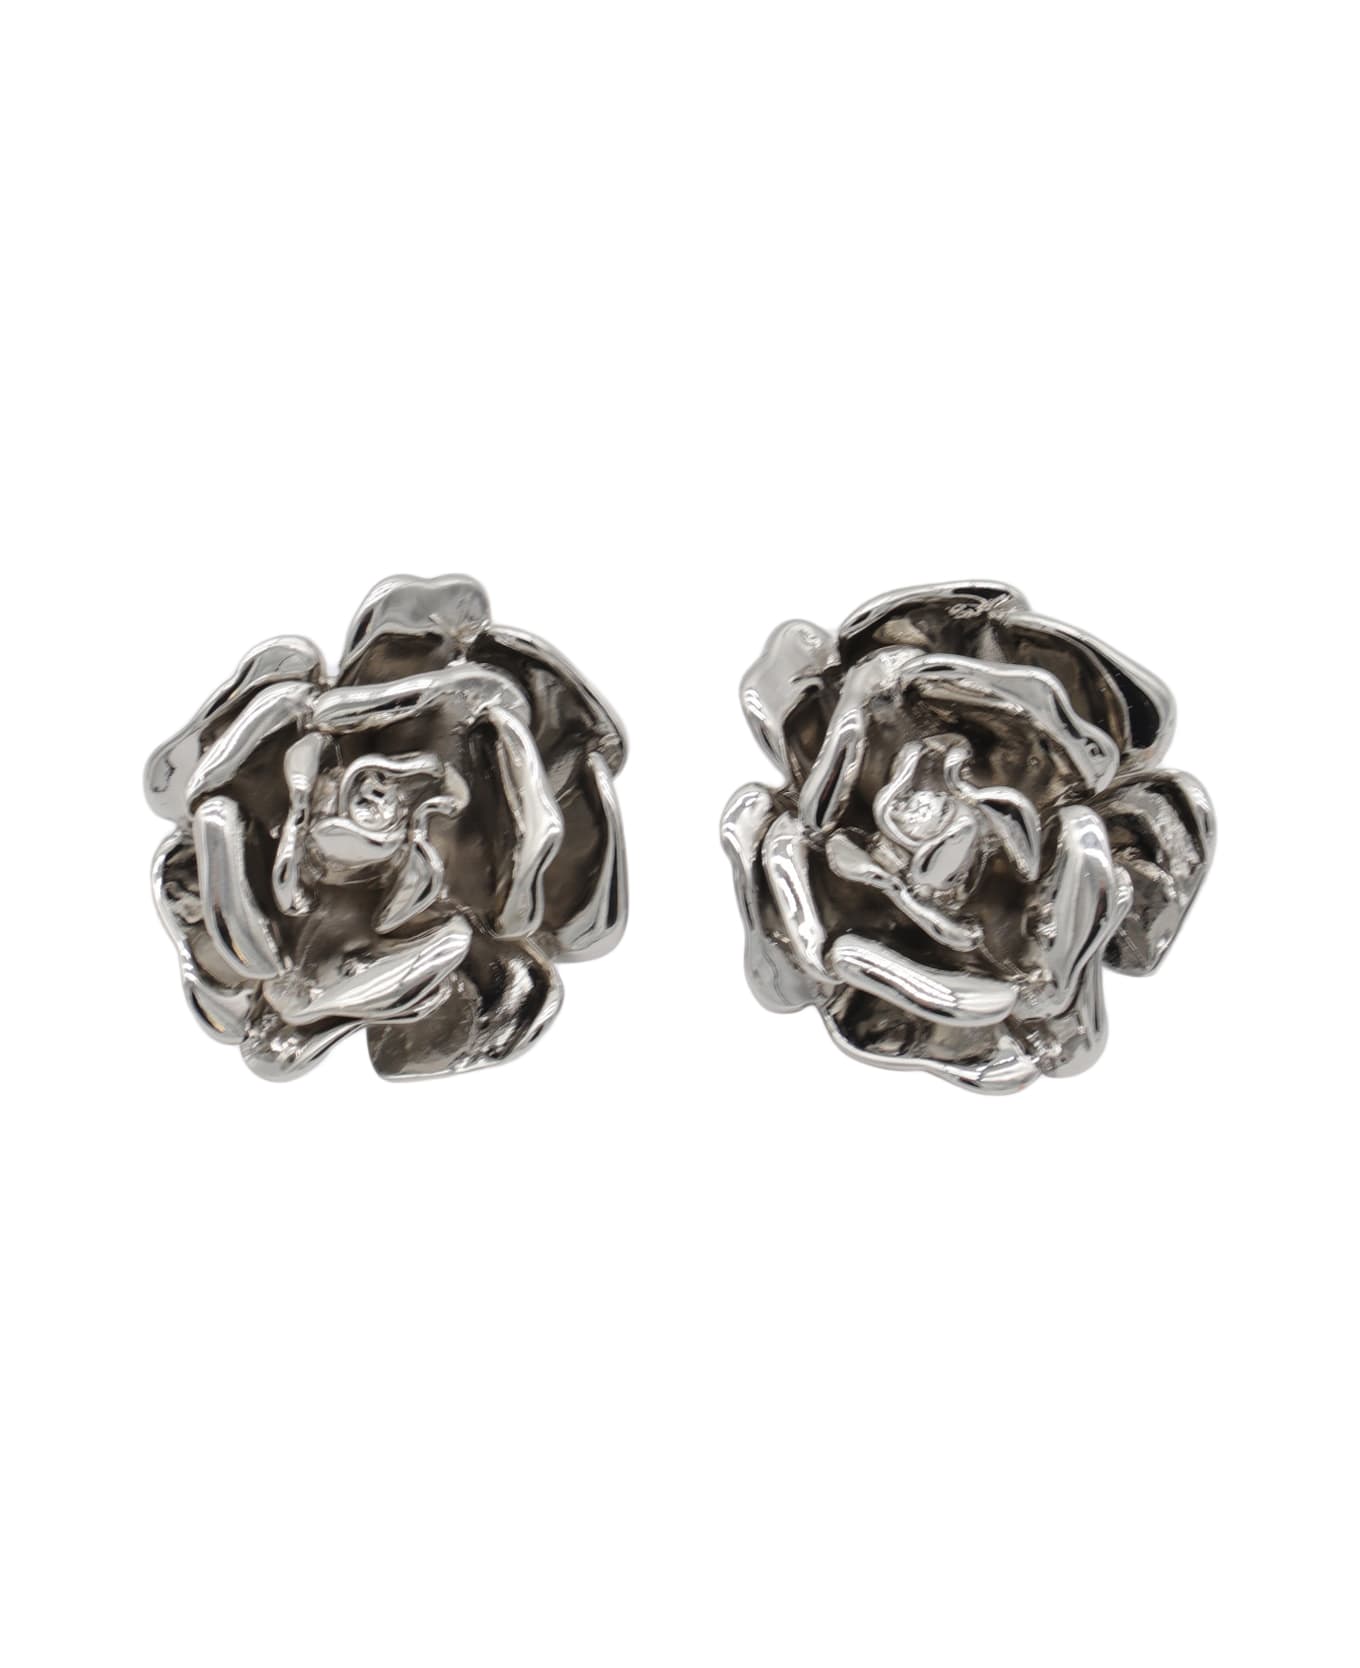 Blumarine Silver Metal Rose Earrings - NIKEL FREE イヤリング